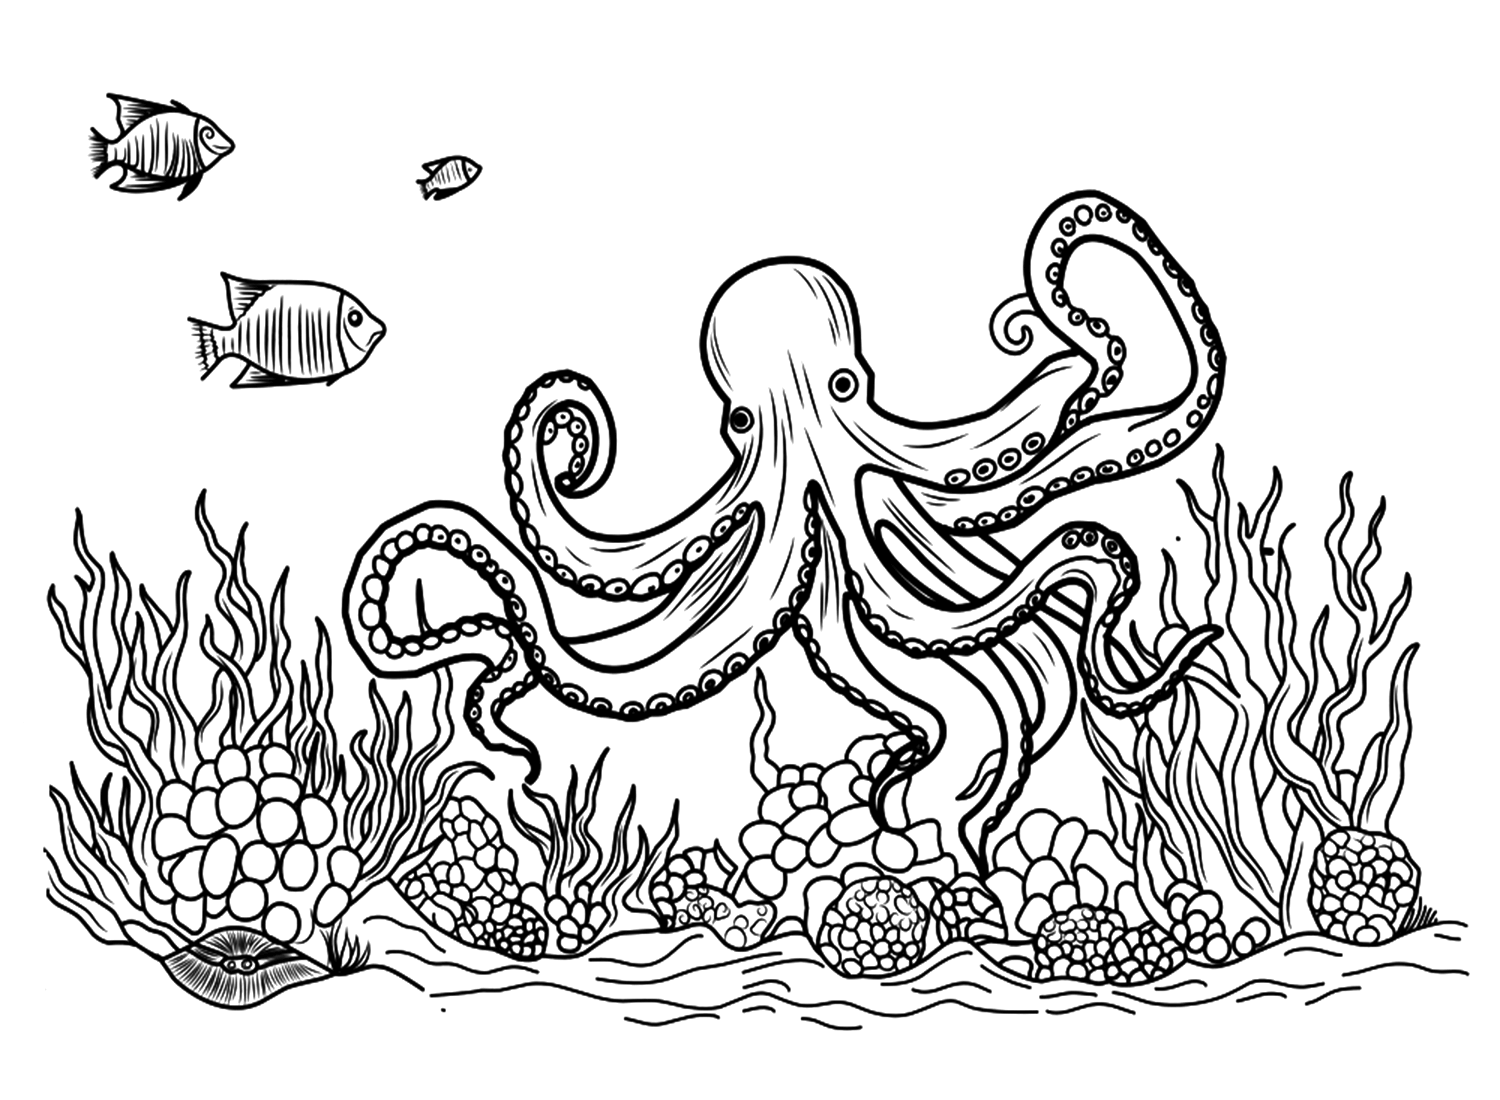 Página para colorear de pulpo realista de Octopus